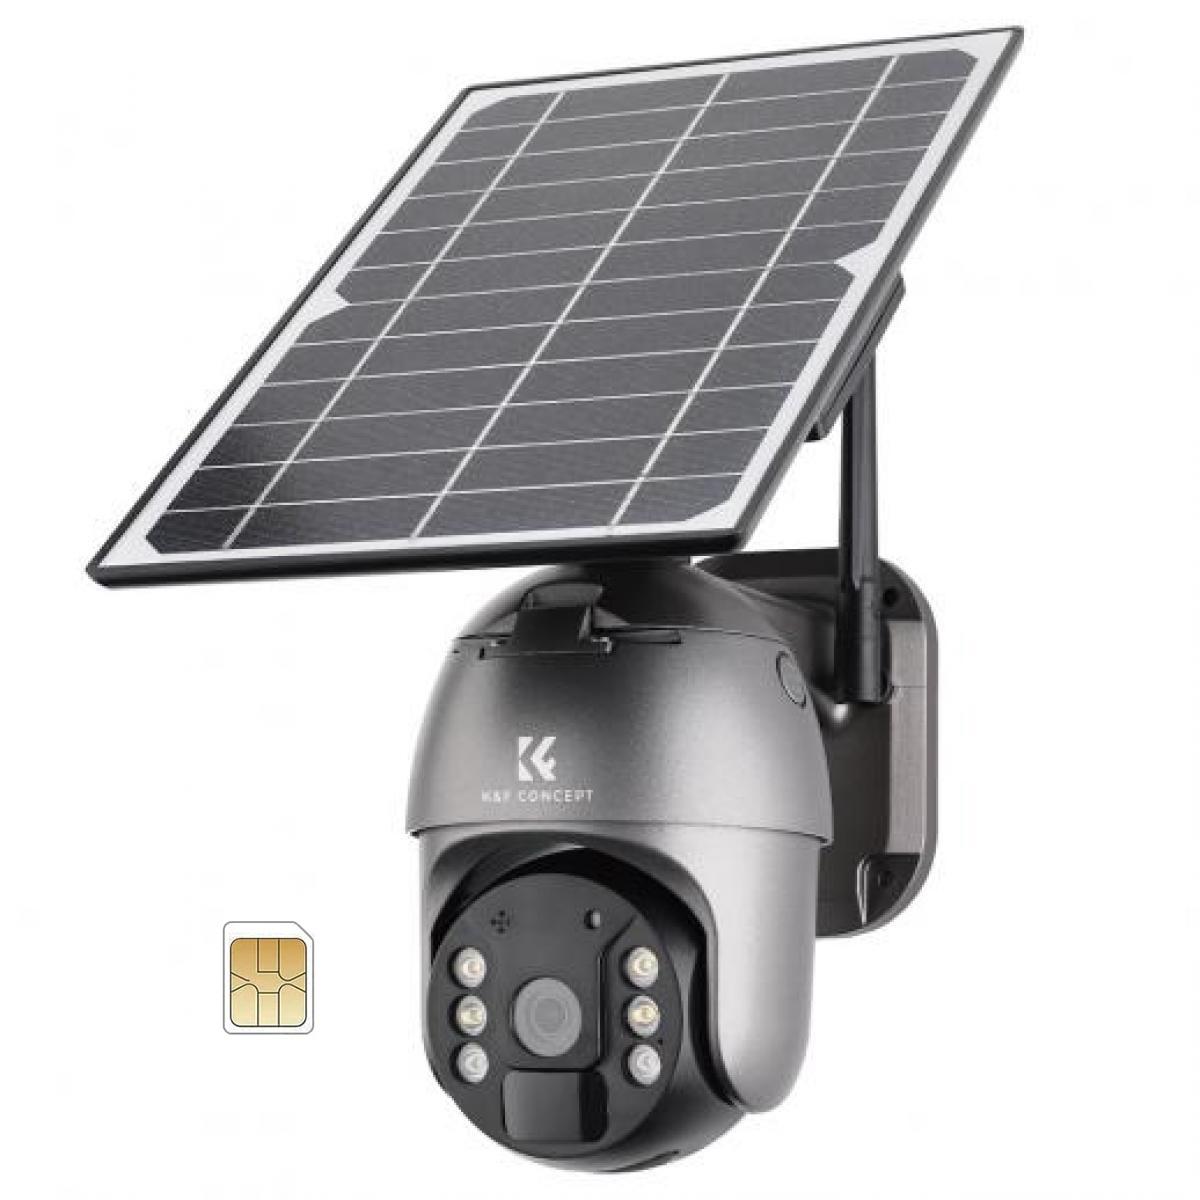 Camara Vigilancia 4G Exterior Solar, tarjeta SIM. de segunda mano por 80  EUR en Jove en WALLAPOP